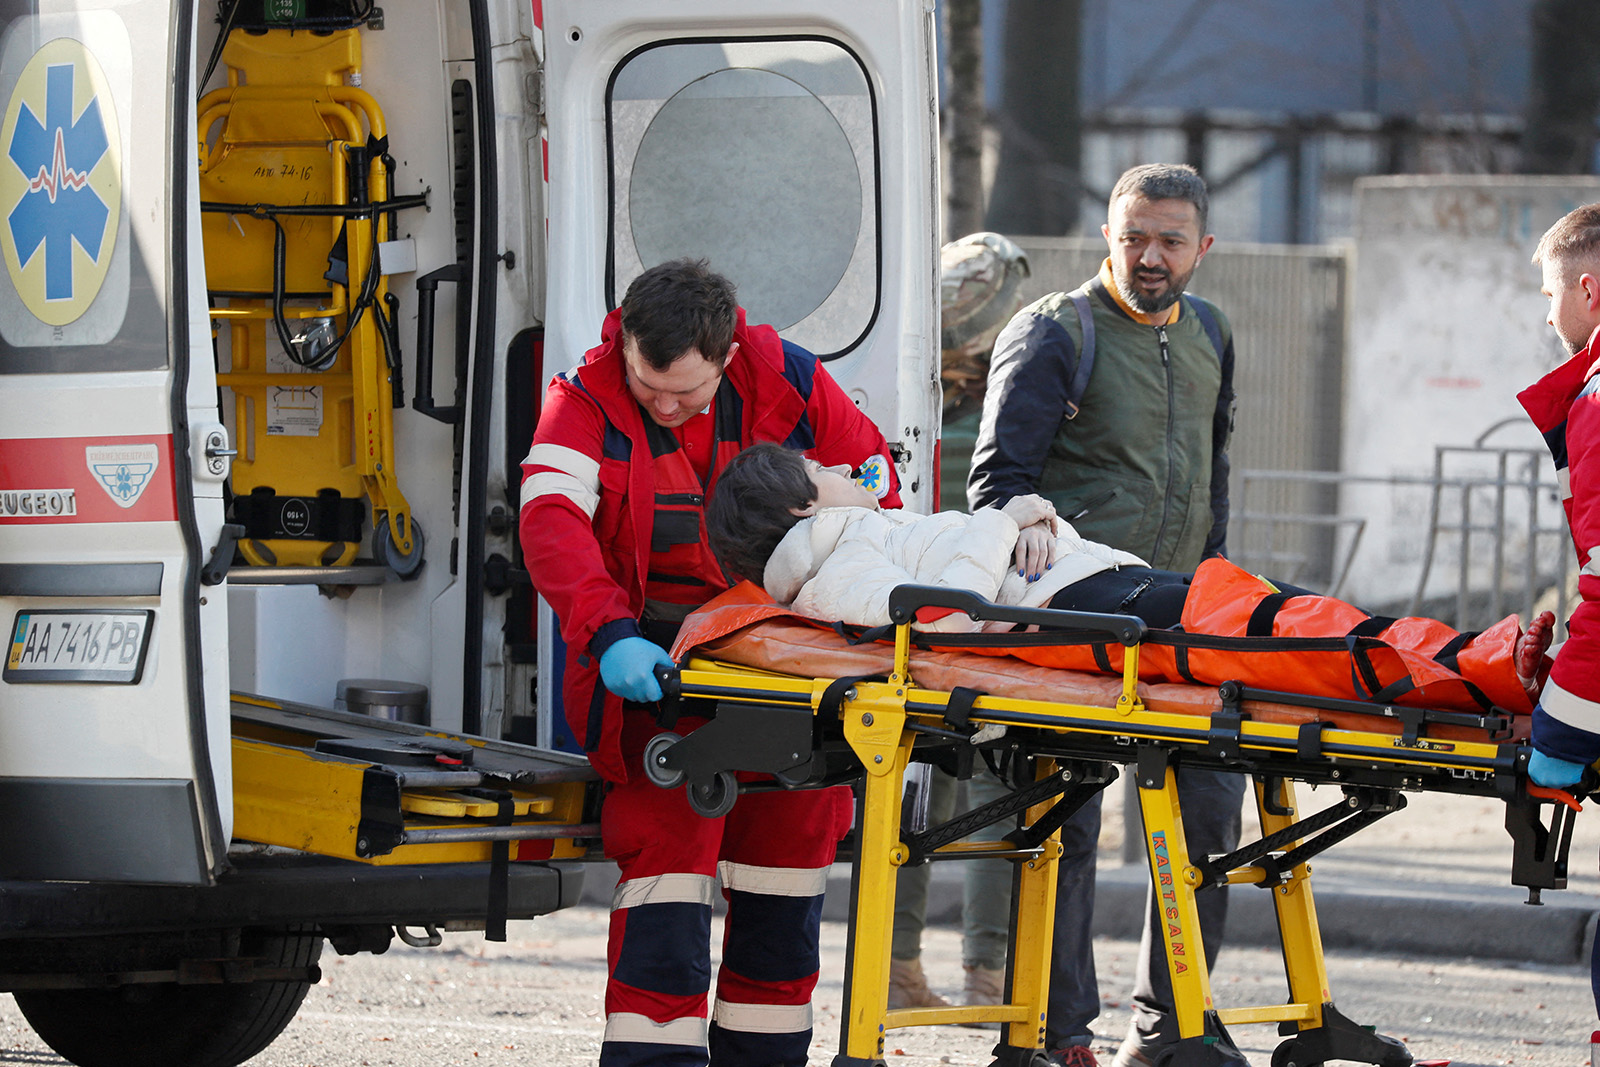 Медики везут женщину, которая была ранена при обстреле жилого дома, в машину скорой помощи, рядом стоит ее муж, Киев, Украина 26 февраля 2022 г. Фото: REUTERS/Gleb Garanich